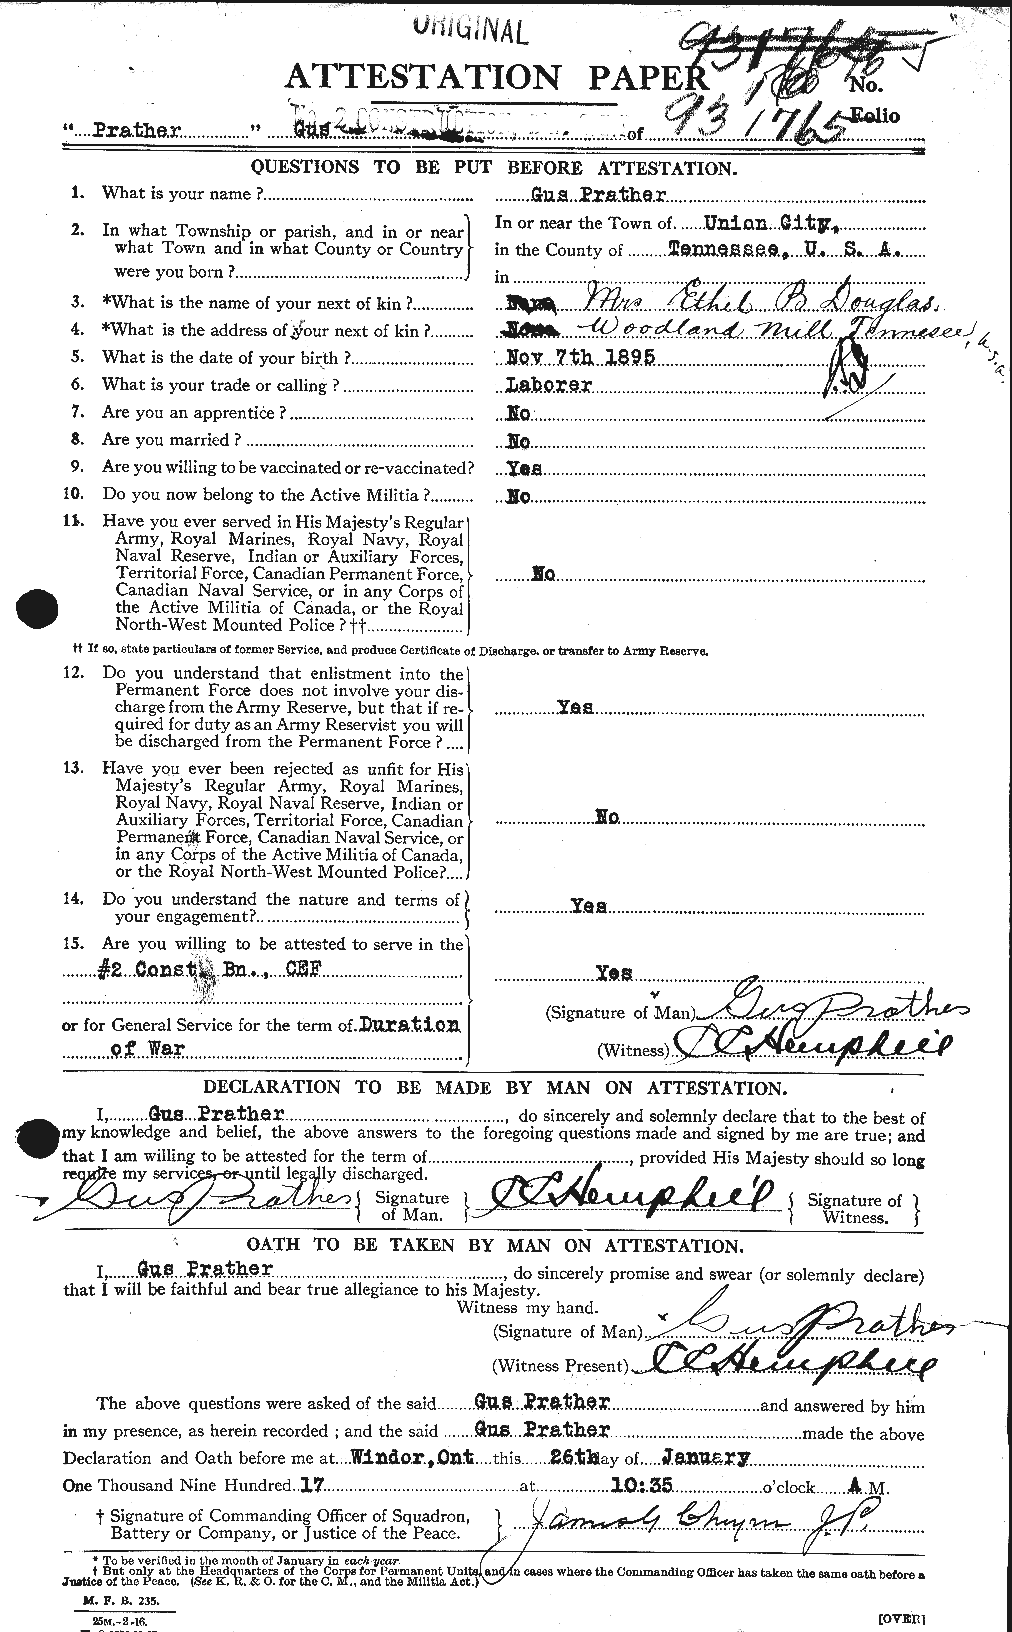 Dossiers du Personnel de la Première Guerre mondiale - CEC 586606a